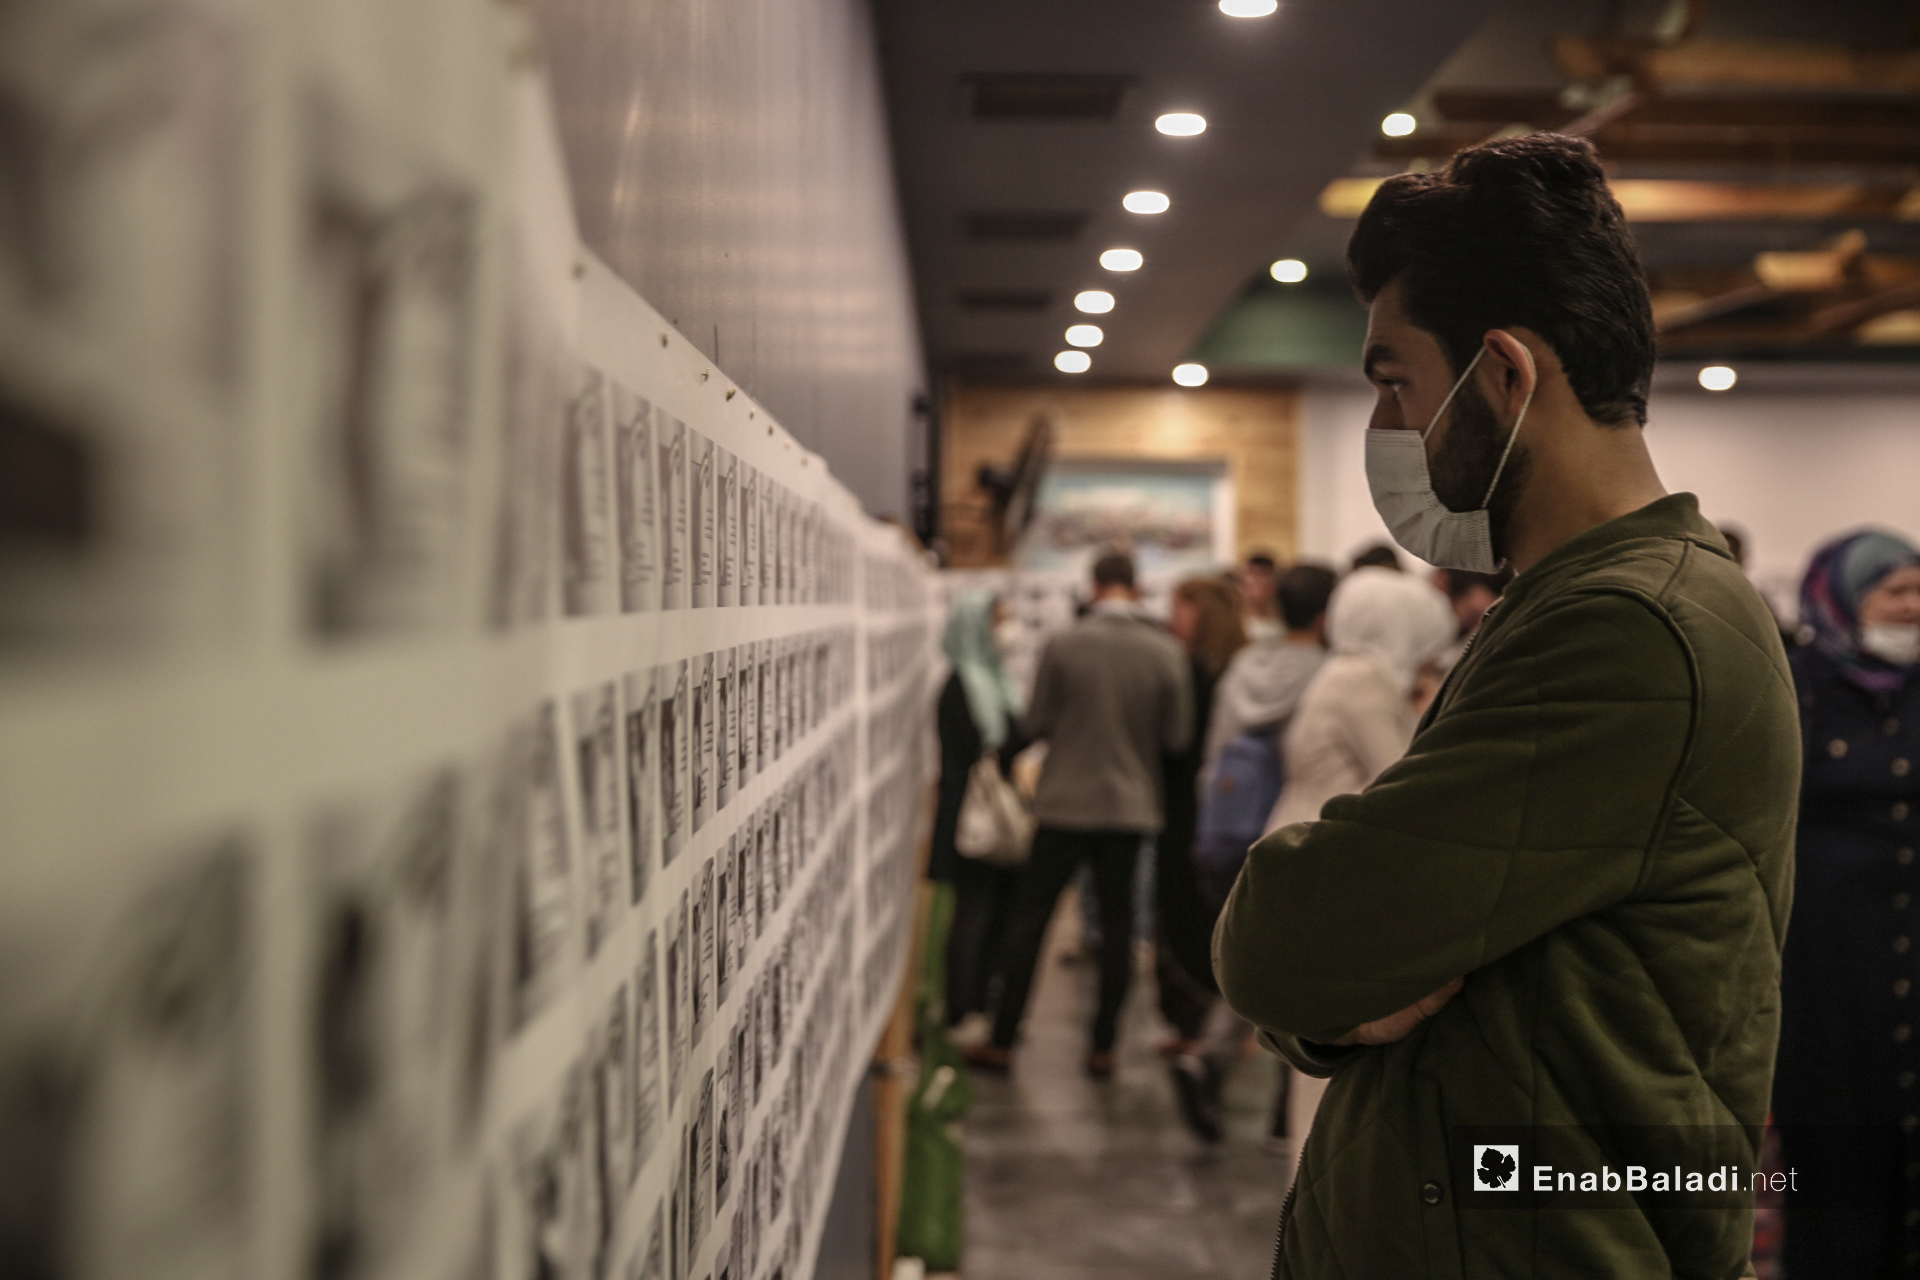 شاب ينظر إلى صور ضحايا أطفال سوريين في معرض "سُكّان الذاكرة" الذي يوثق بالصور و الاسماء و التواريخ 4600 طفل سوري على لوحة طولها 70 متر في اسطنبول - 13 تشرين أول (عنب بلدي/ عبد المعين حمص)